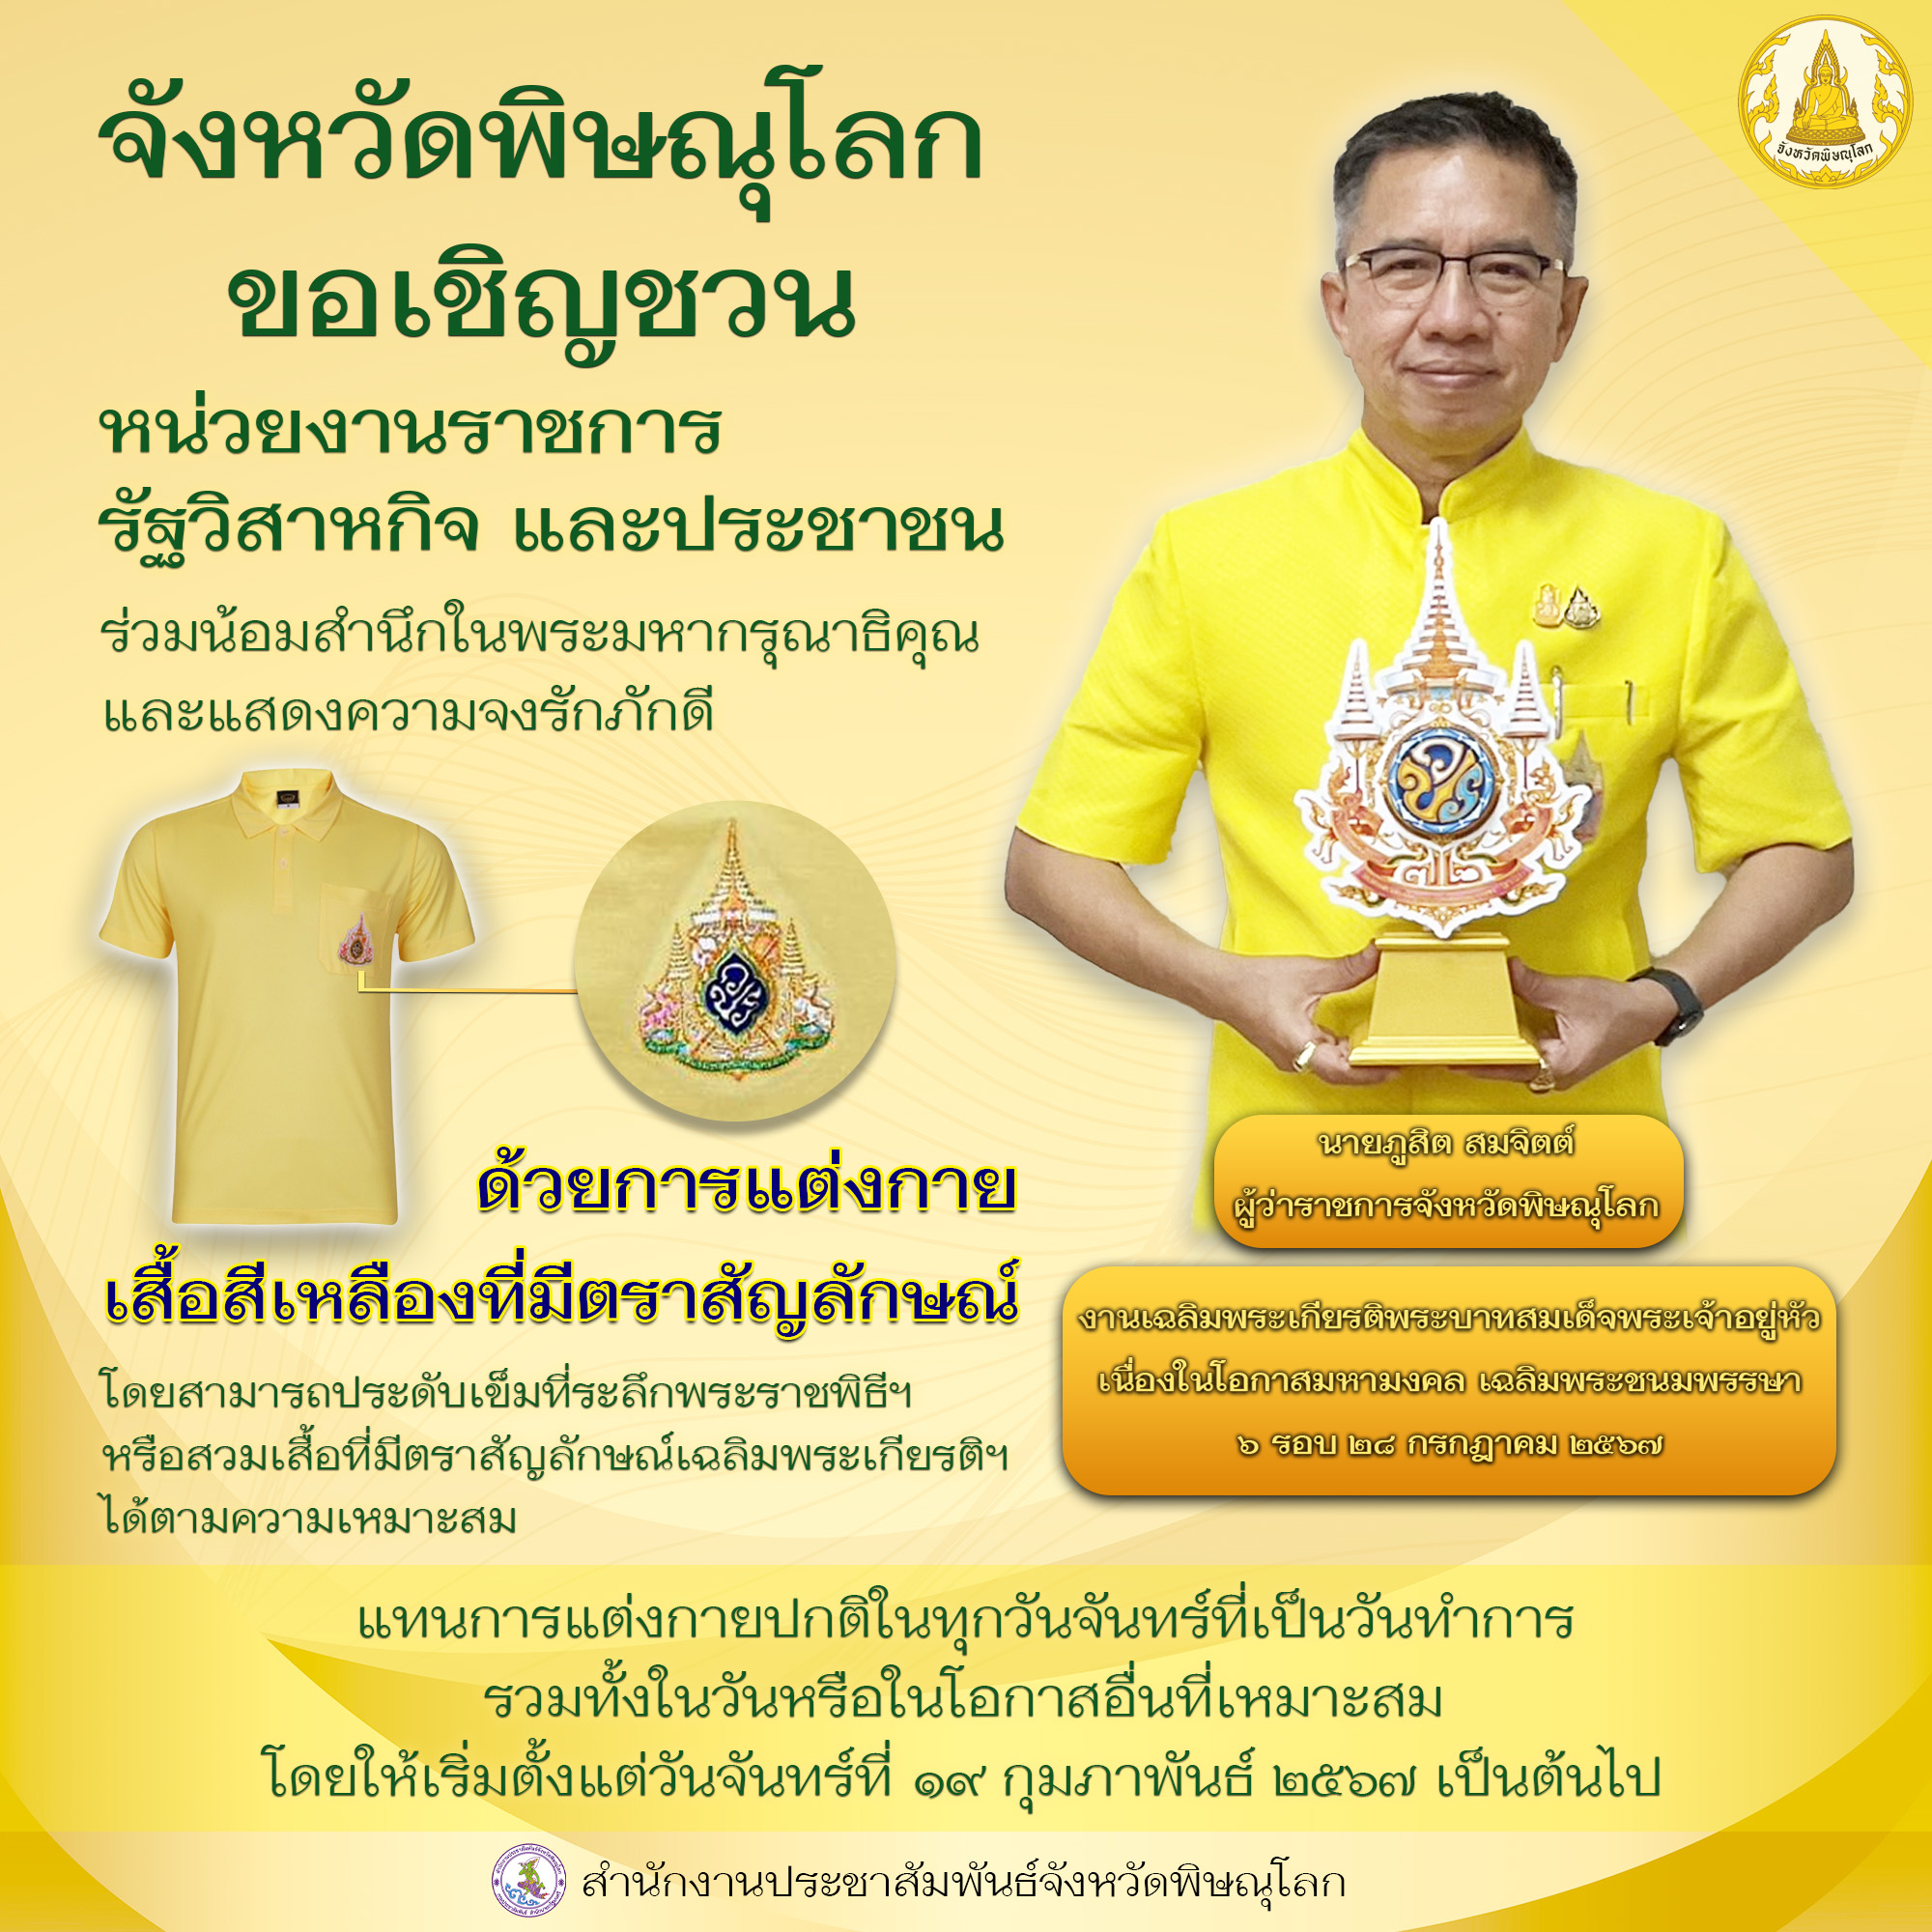 ขอเชิญชวนร่วมสวมใส่เสื้อสีเหลืองตราสัญลักษณ์เฉลิมพระเกียรติพระบาทสมเด็จพระเจ้าอยู่หัว